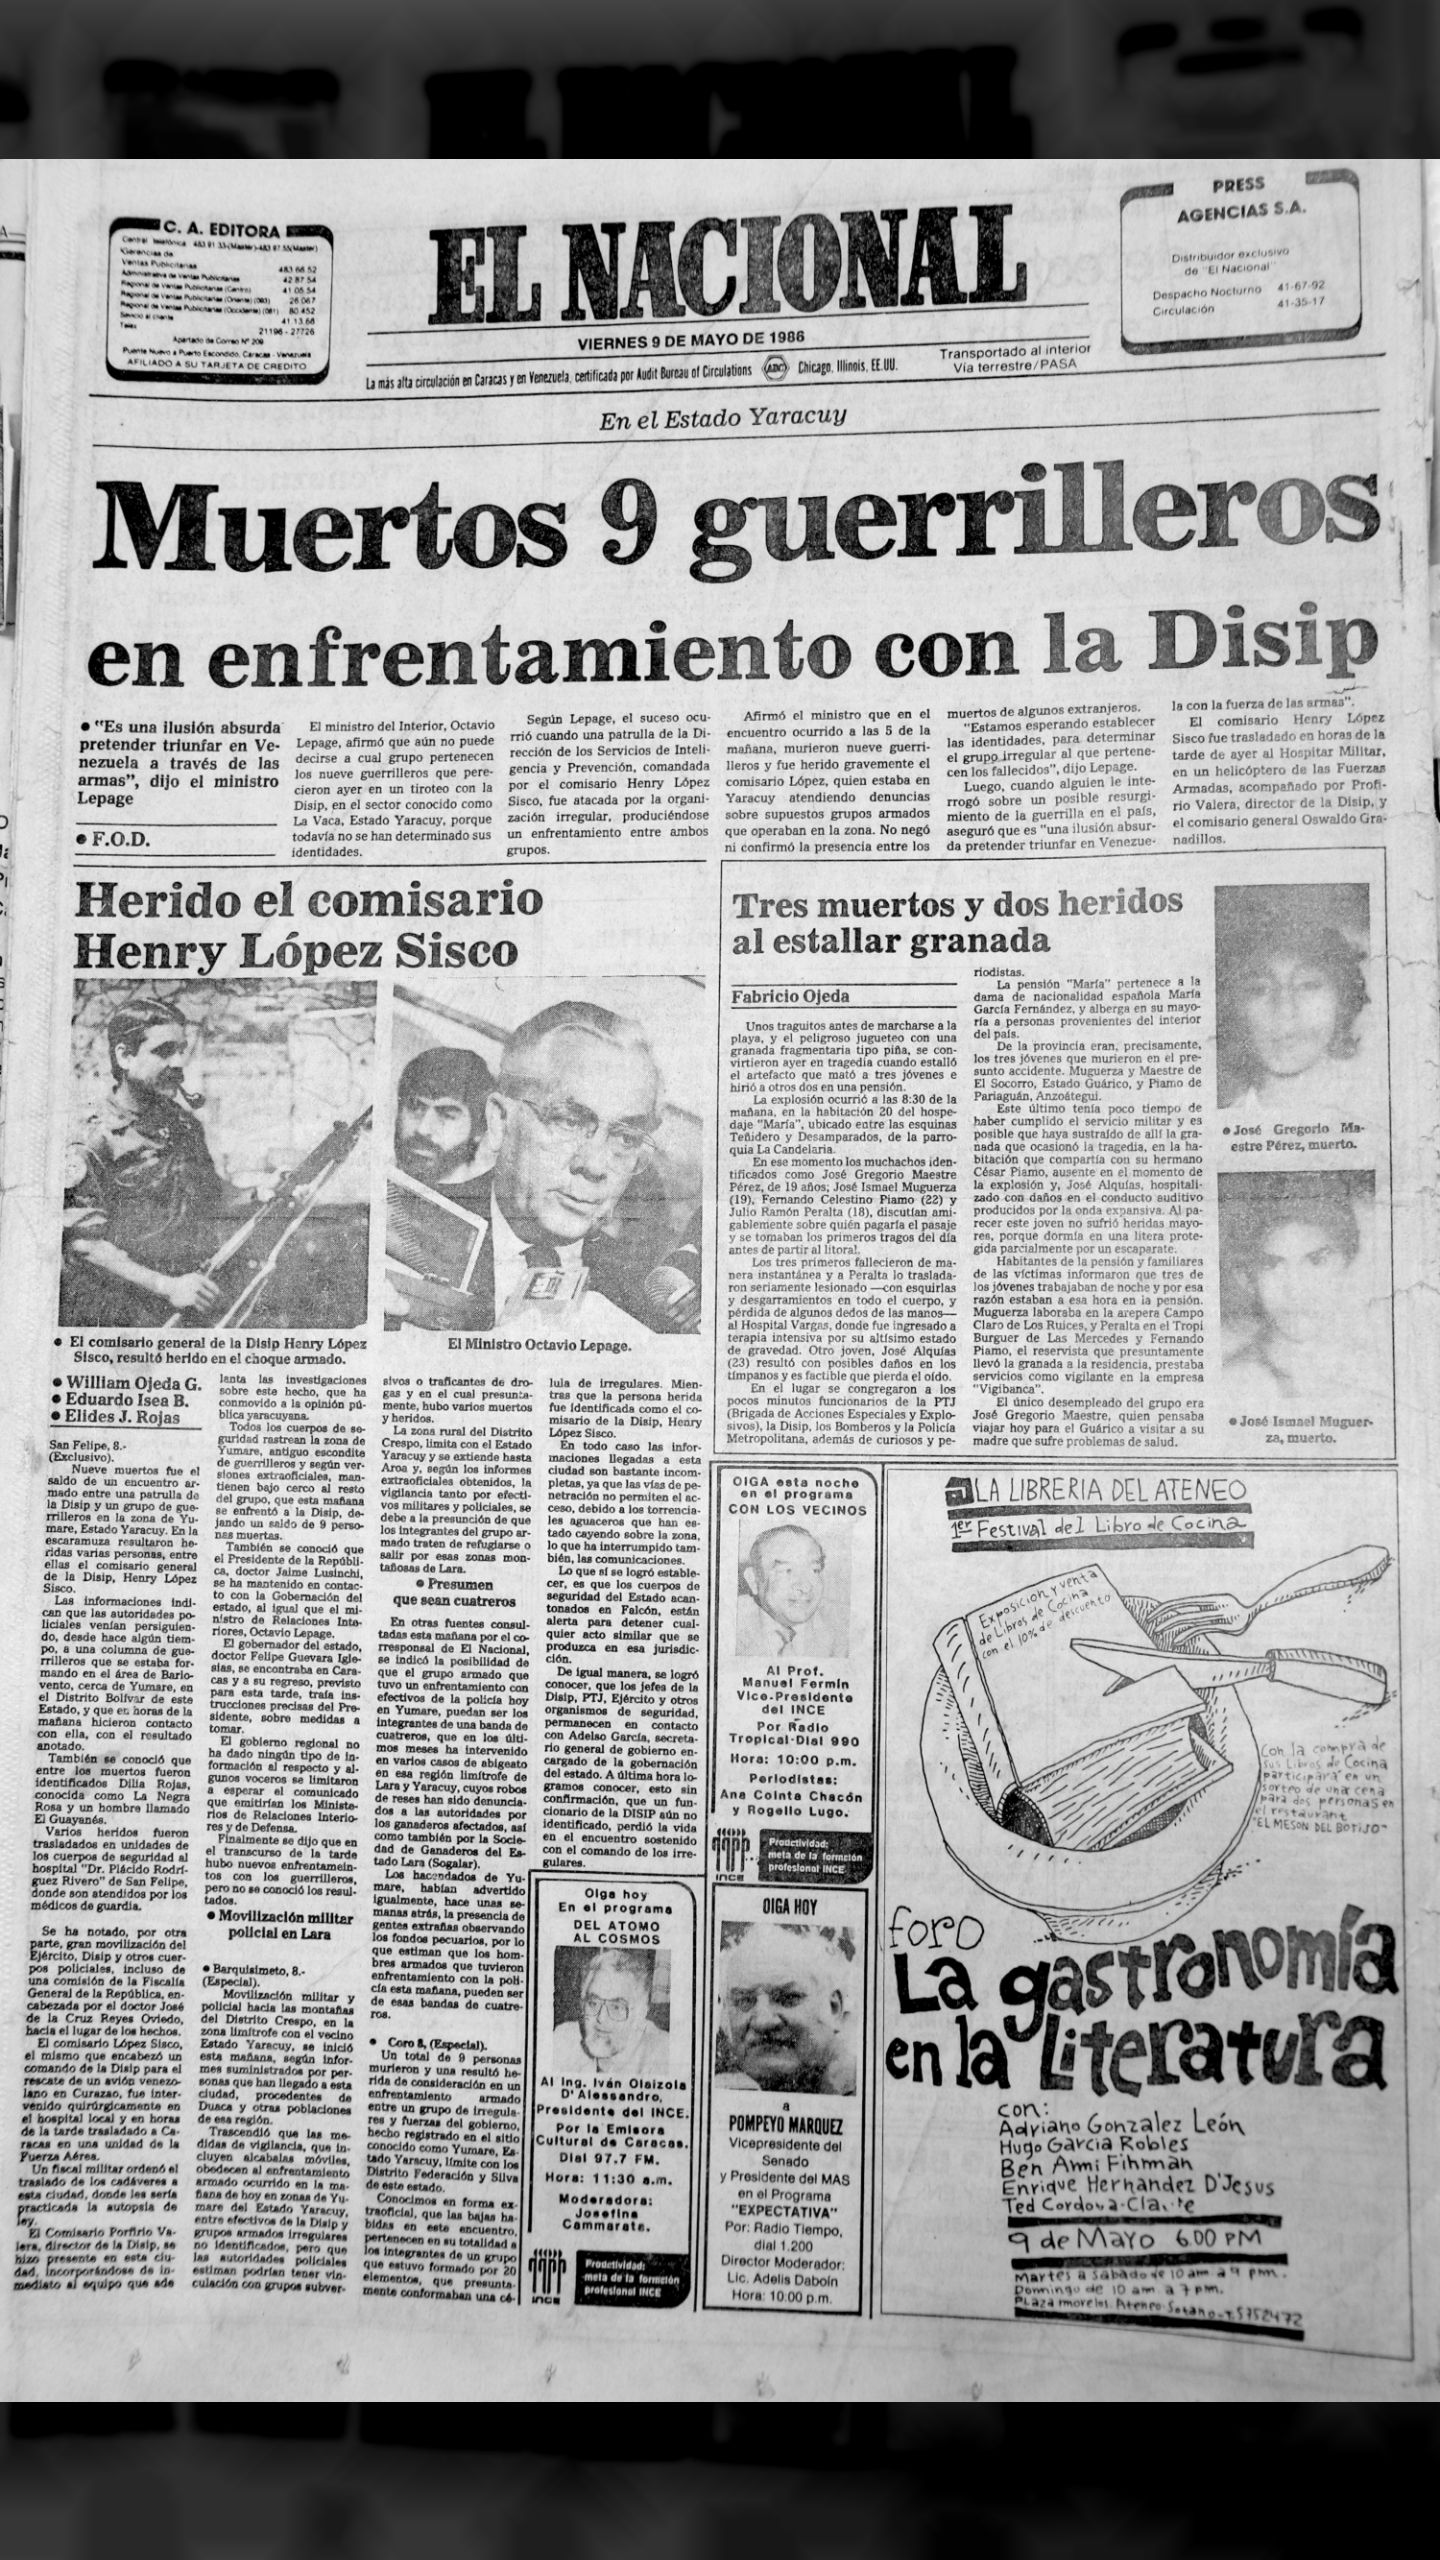 Las masacres de Yumare II (El Nacional, 9 de mayo de 1986)